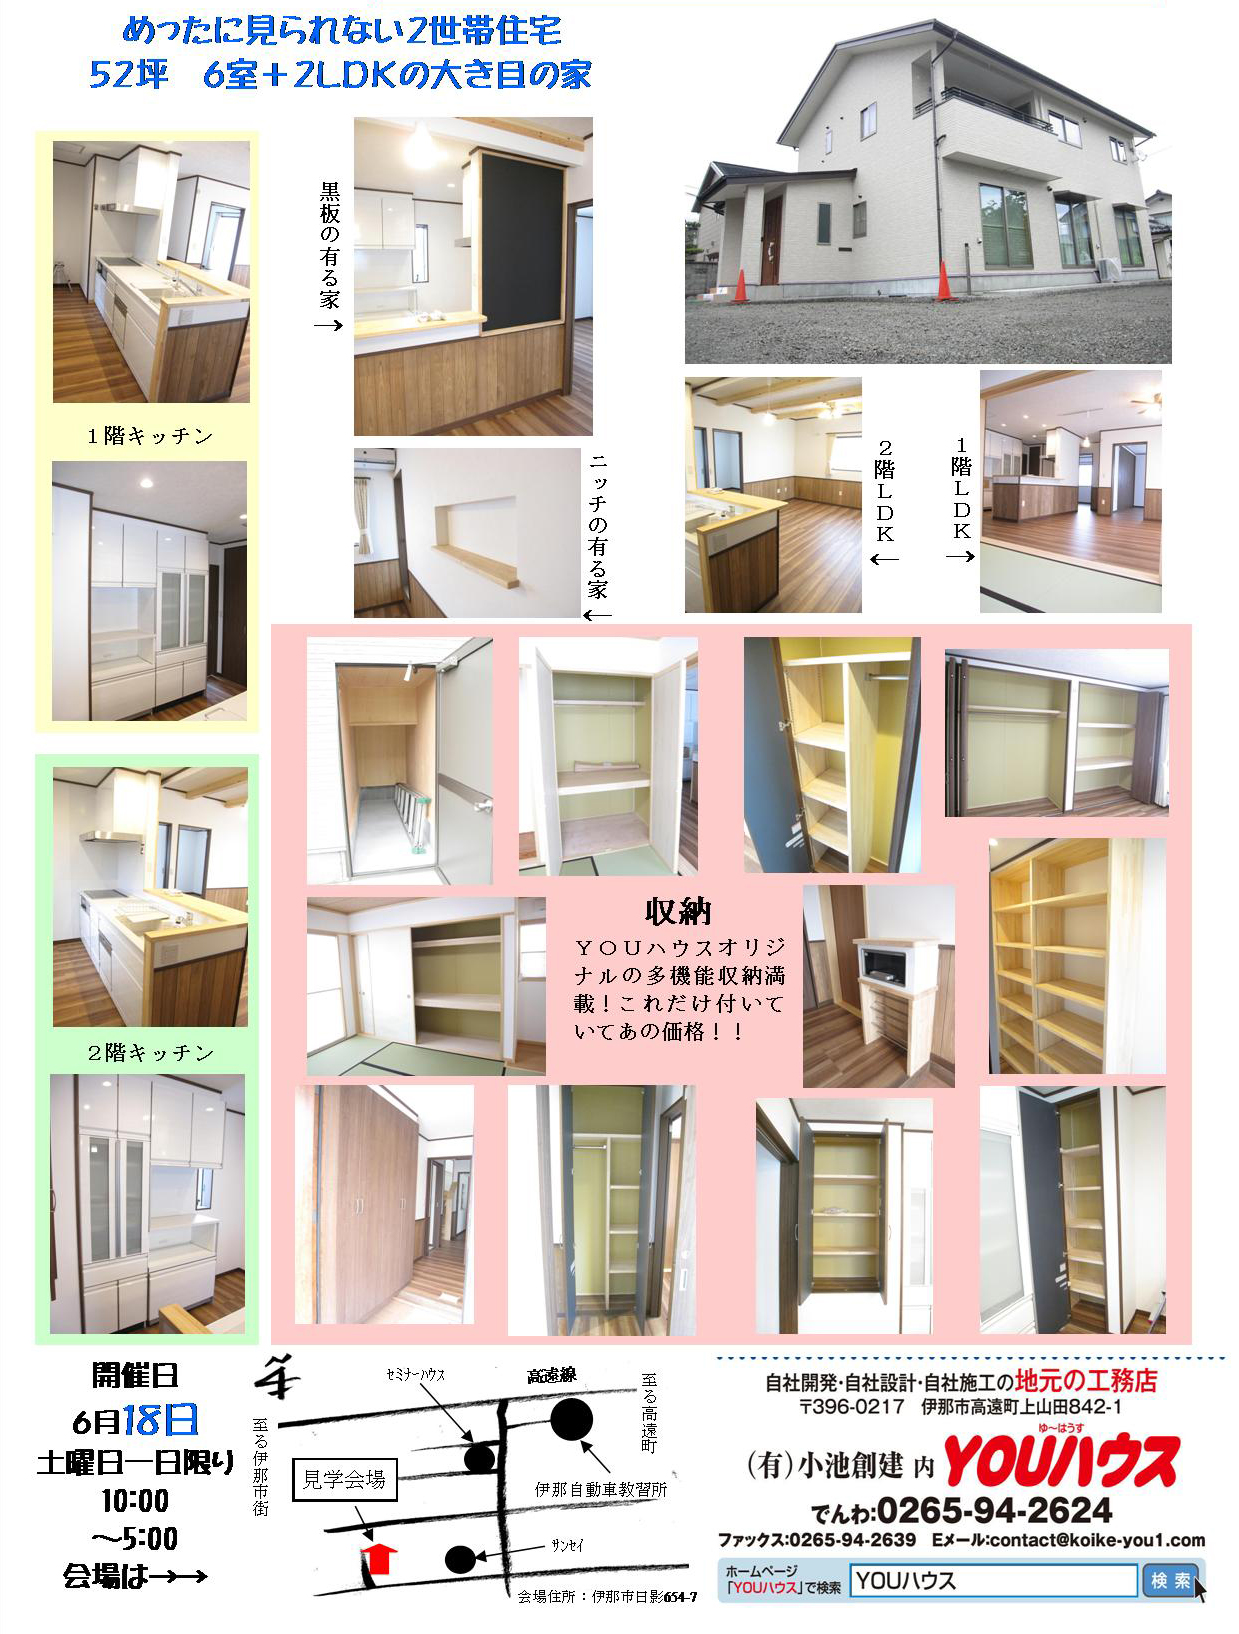 2016・06松本邸広告2